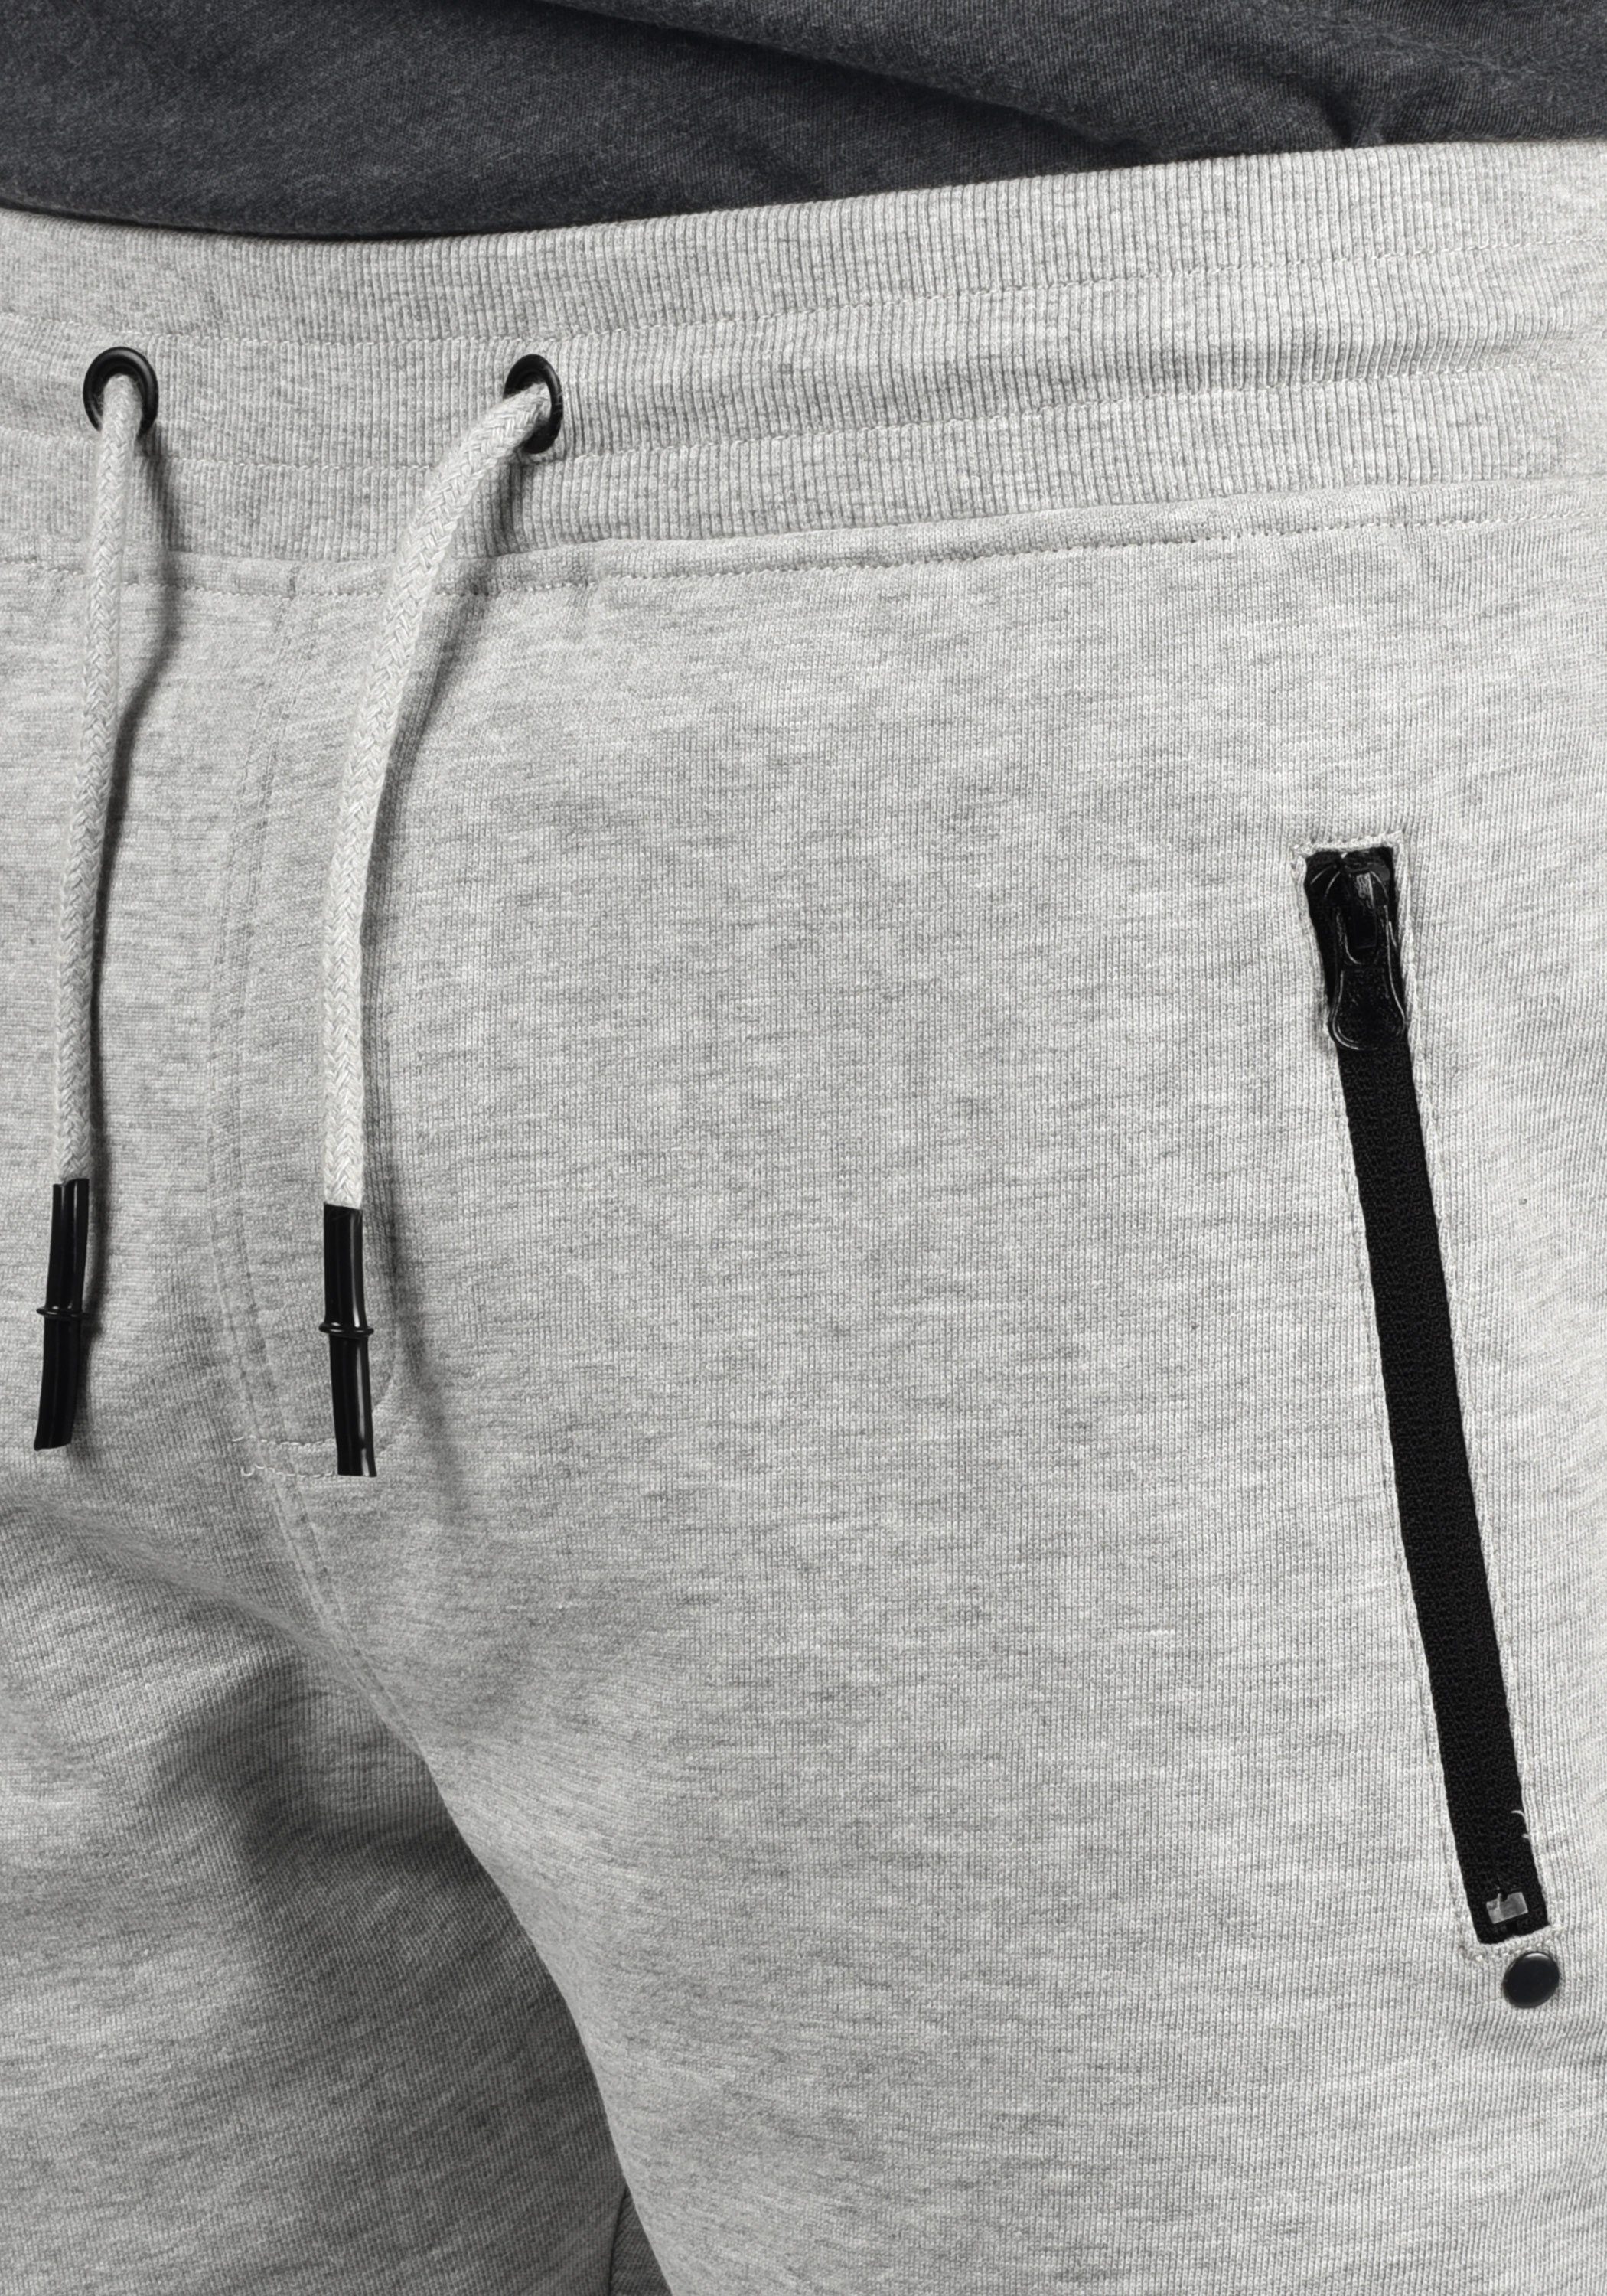 !Solid Sweatshorts Grey kurze Melange SDTaras (8242) Light mit Reißverschlusstaschen Hose